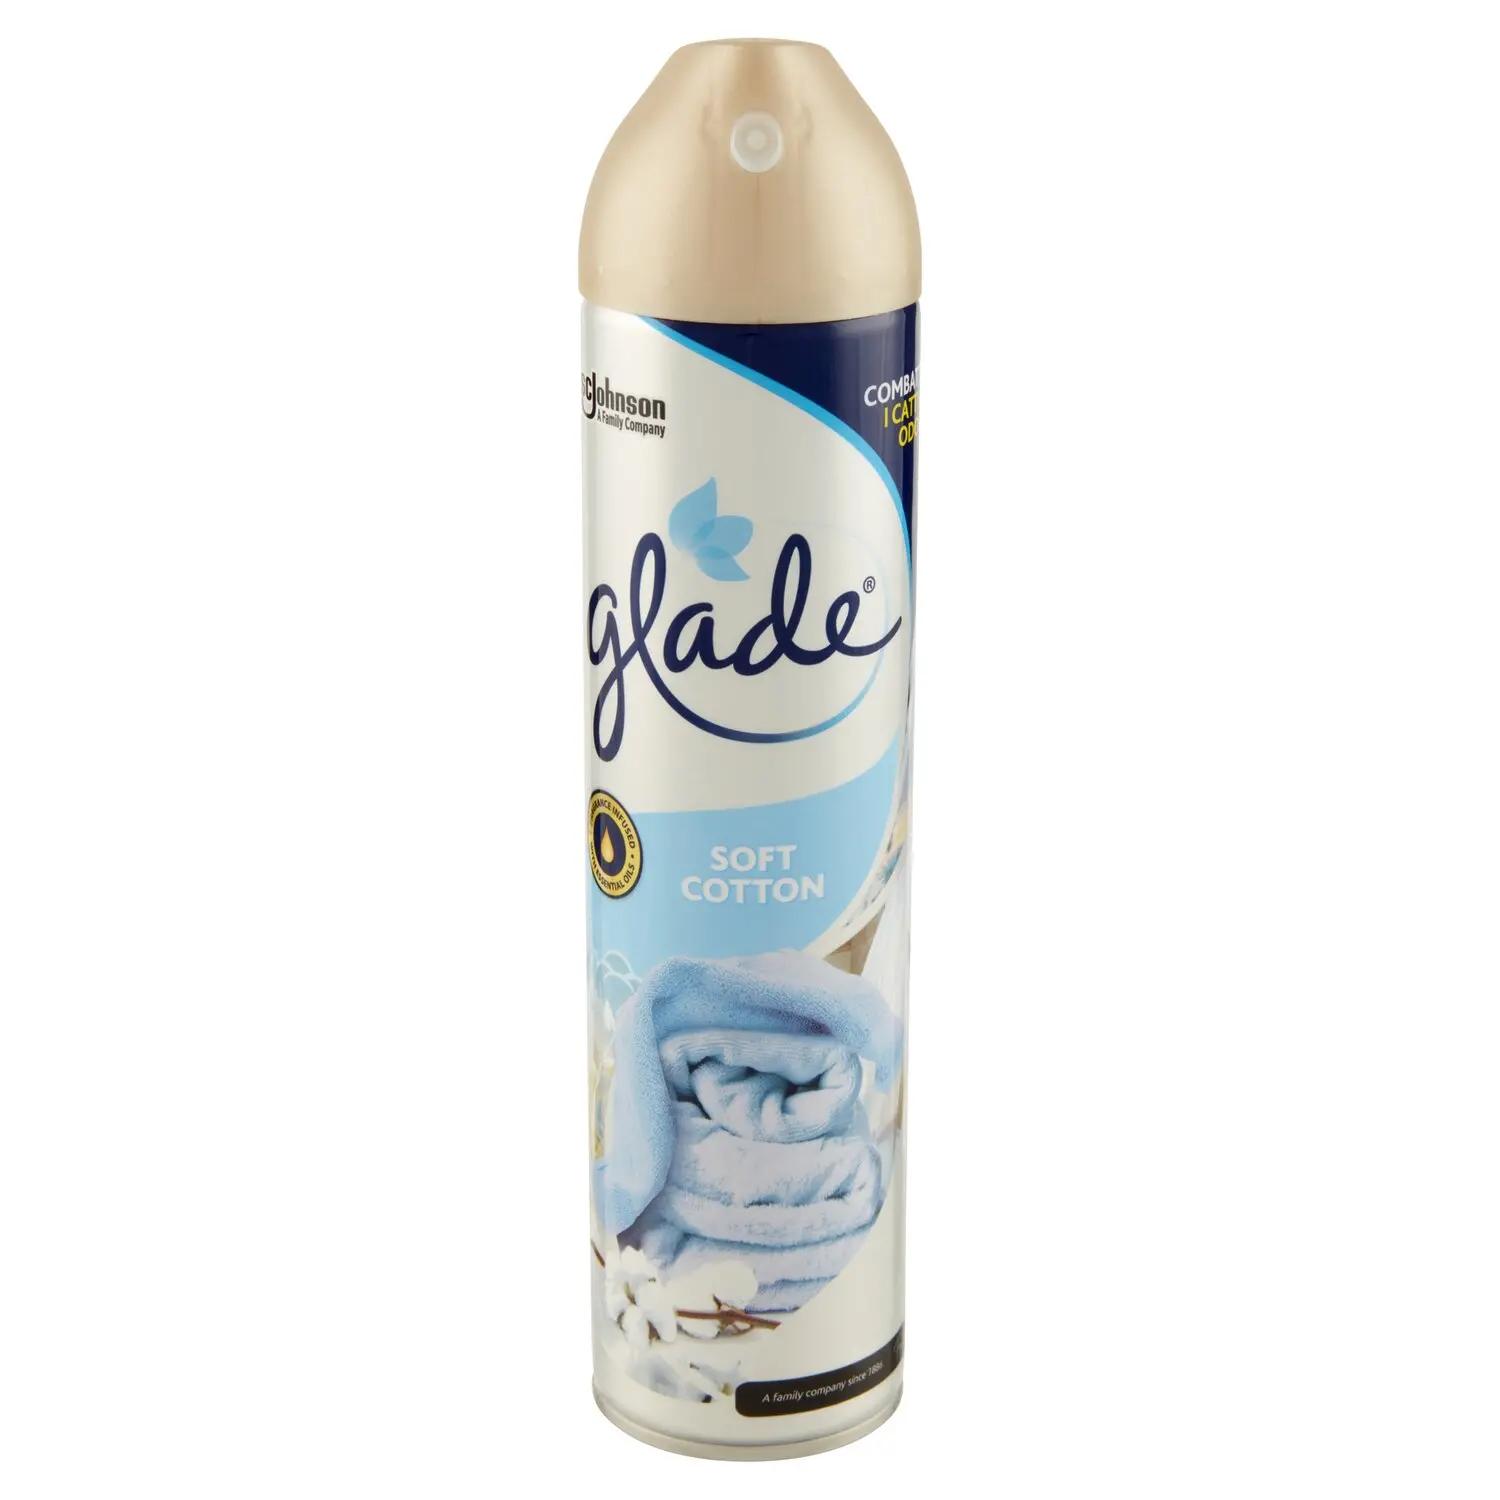 Glade Spray Silver, Profumatore per Ambienti, Fragranza Soft Cotton 300ml